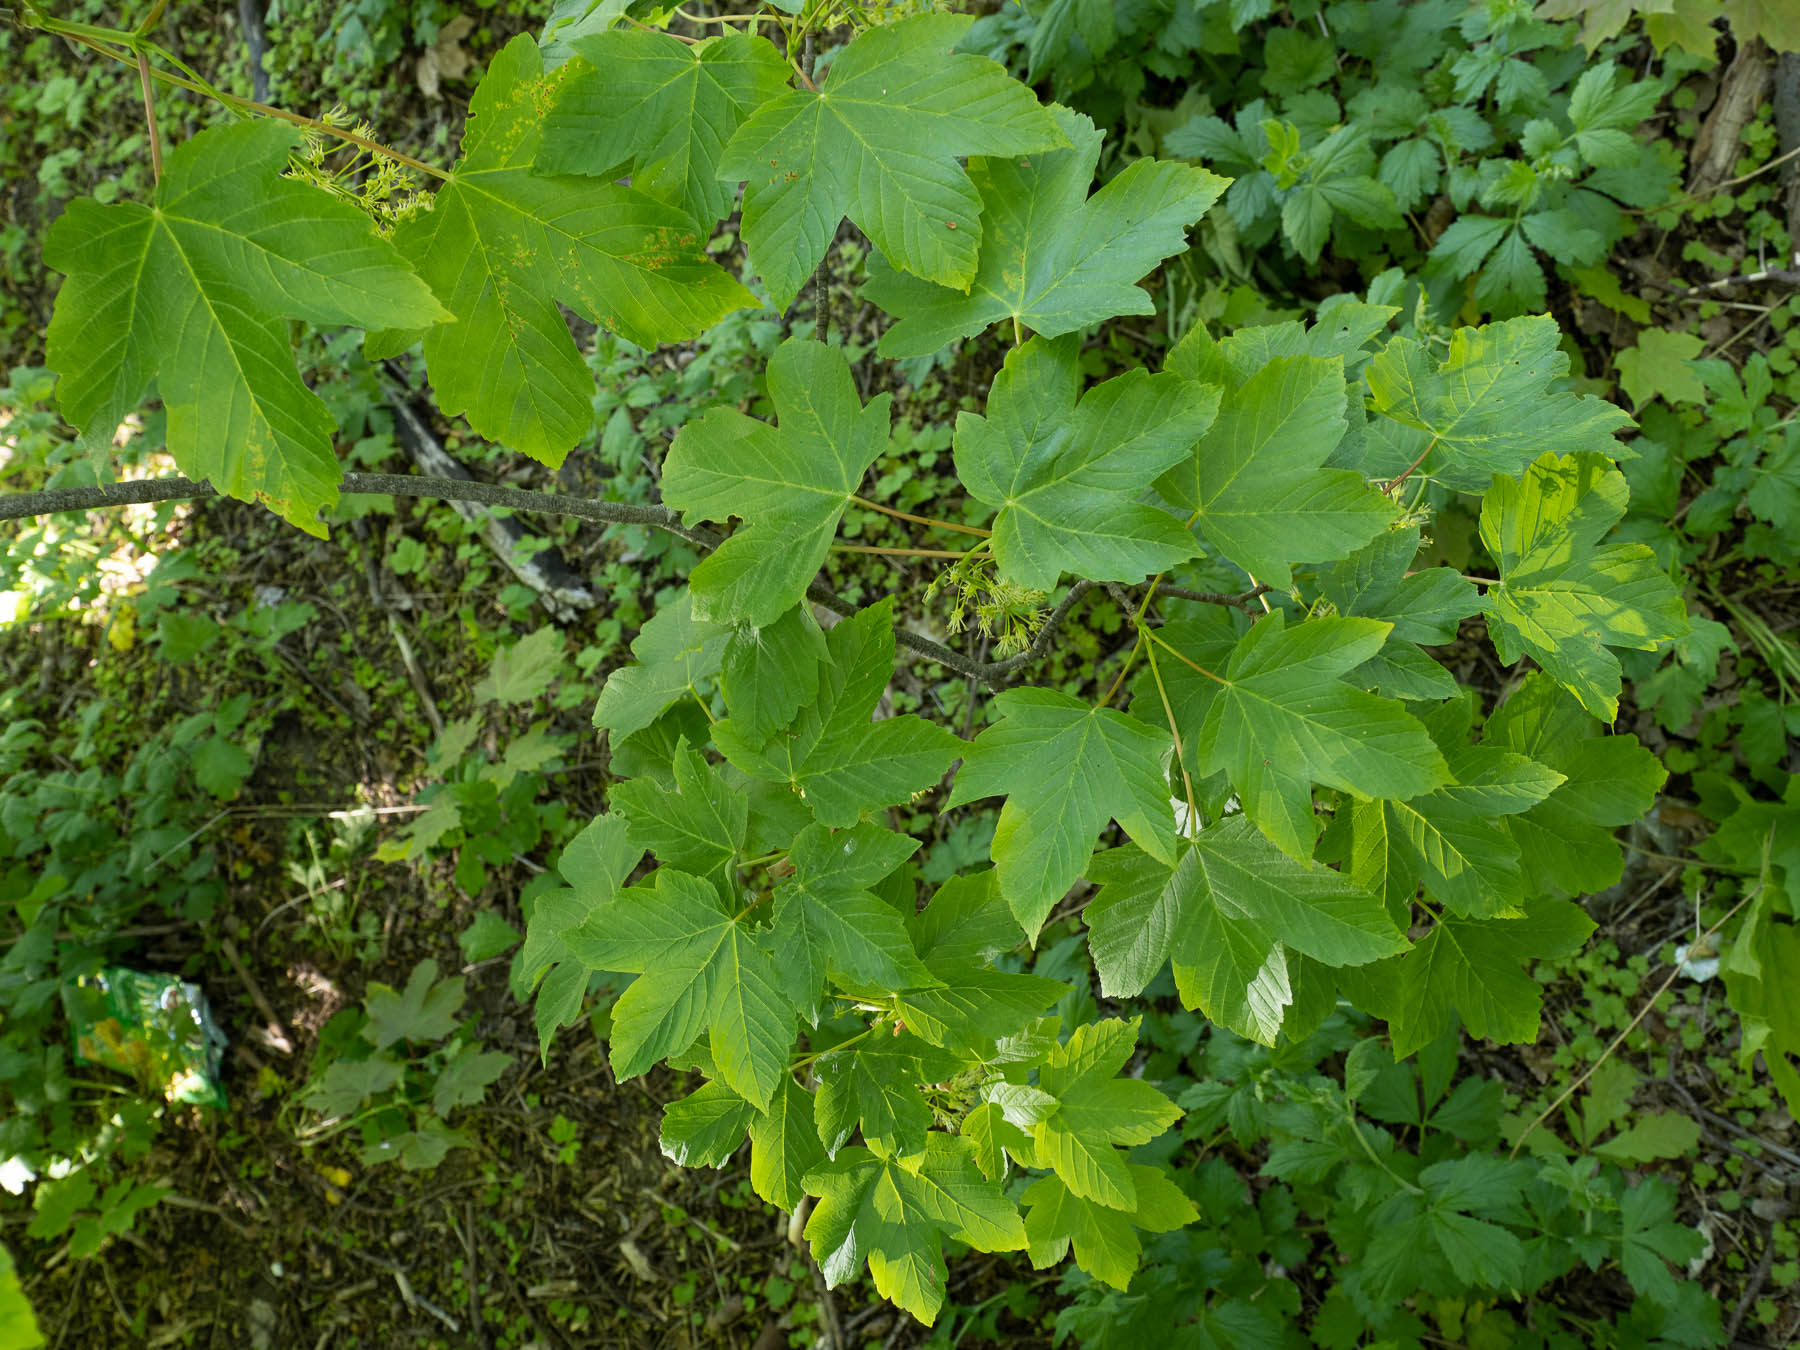 Клён ложноплатановый (Acer pseudoplatanus), также известный как клён белый, в Швеции - интродуцированный вид, завезённый в страну в XVIII веке и успешно прижившийся в её южной части. Стокгольм, май 2020 года. Автор фото: Сутормина Марина